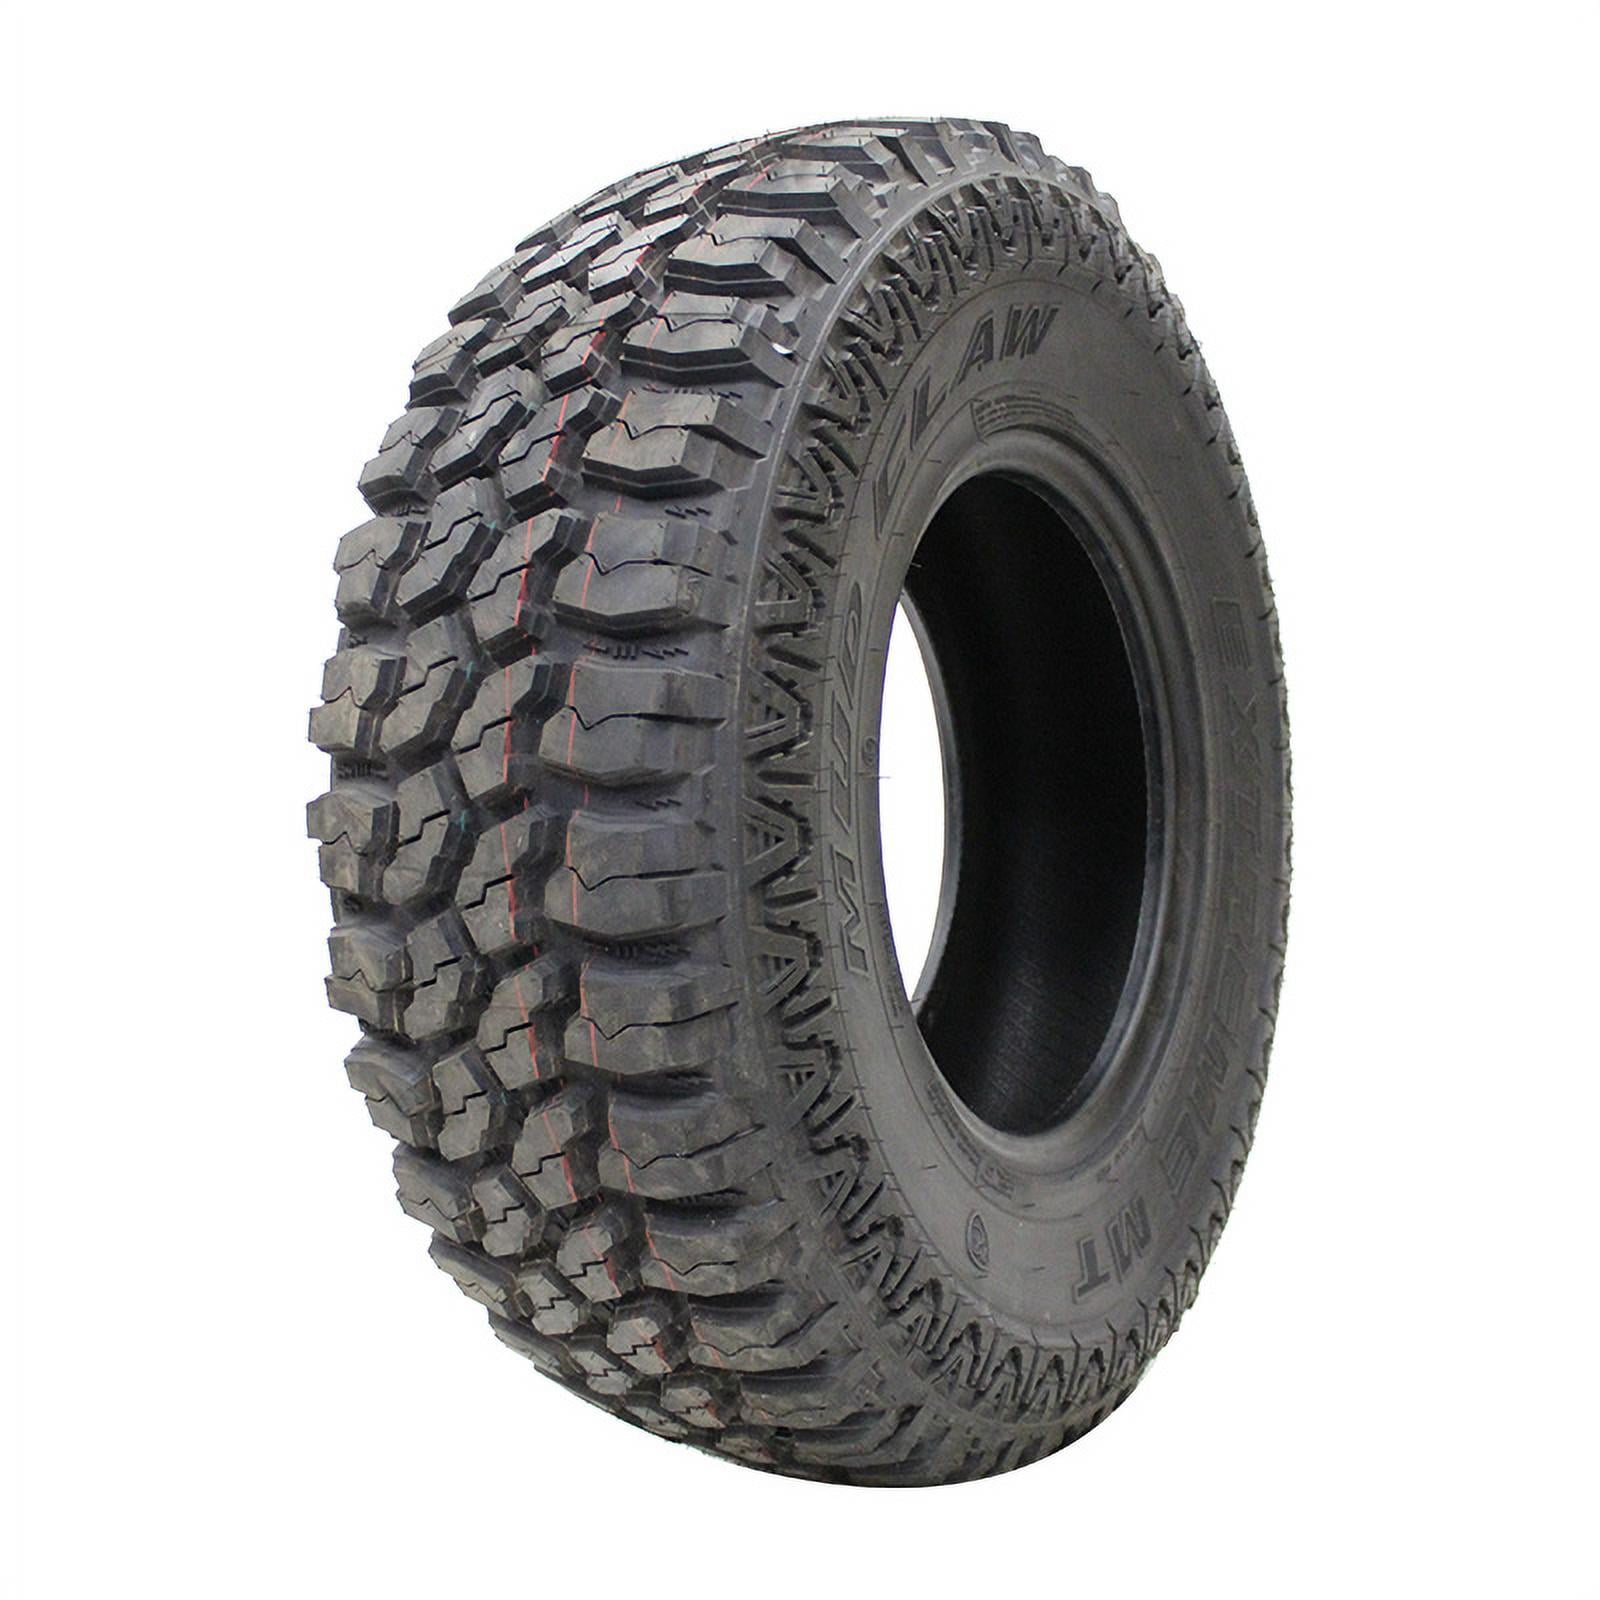 Fortune Tormenta M/T FSR310 LT 245/75R16 Load E 10 Ply MT Mud Tire 